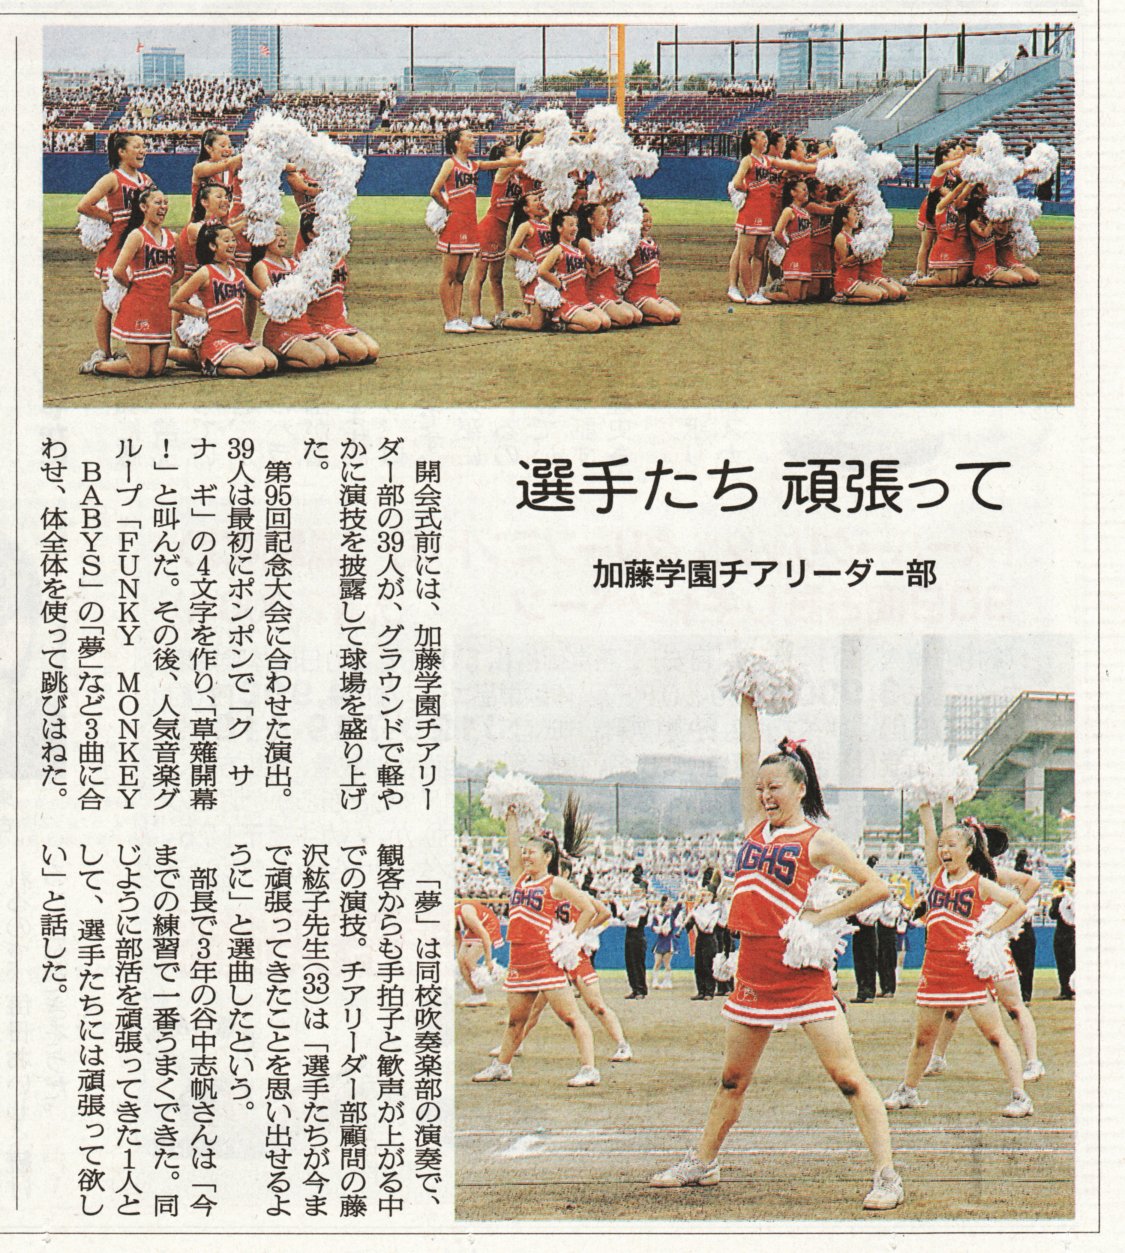 加藤学園高等学校 最新ニュース 高校野球 チアリーダー部 吹奏楽部が開幕を盛り上げる